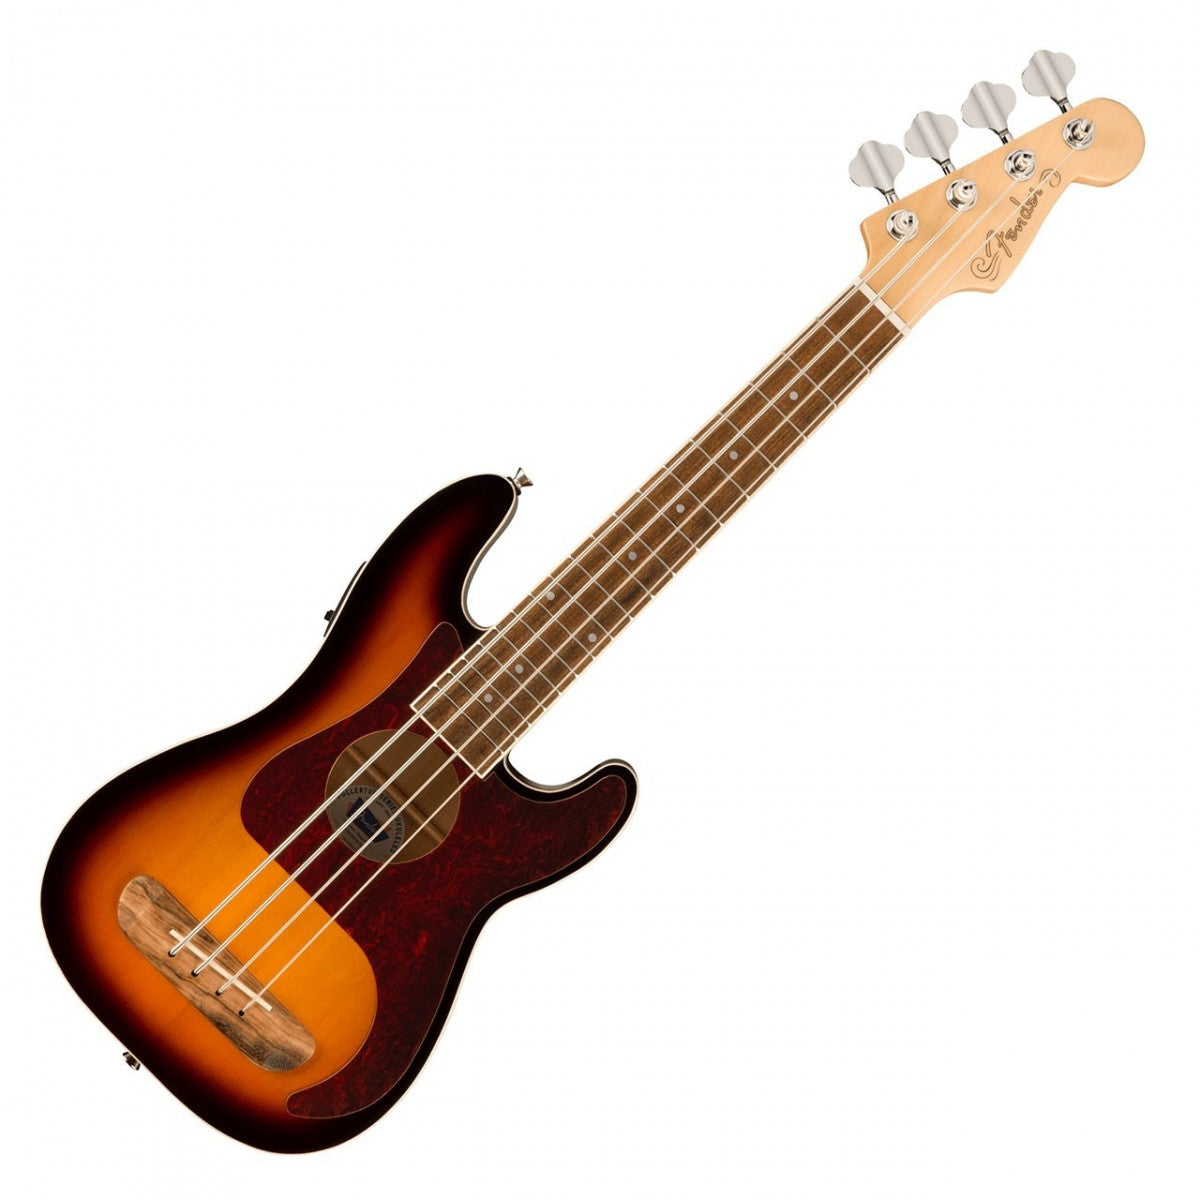 Fender Fullerton Precision Bass Ukulele - 3 Tone Sunburst